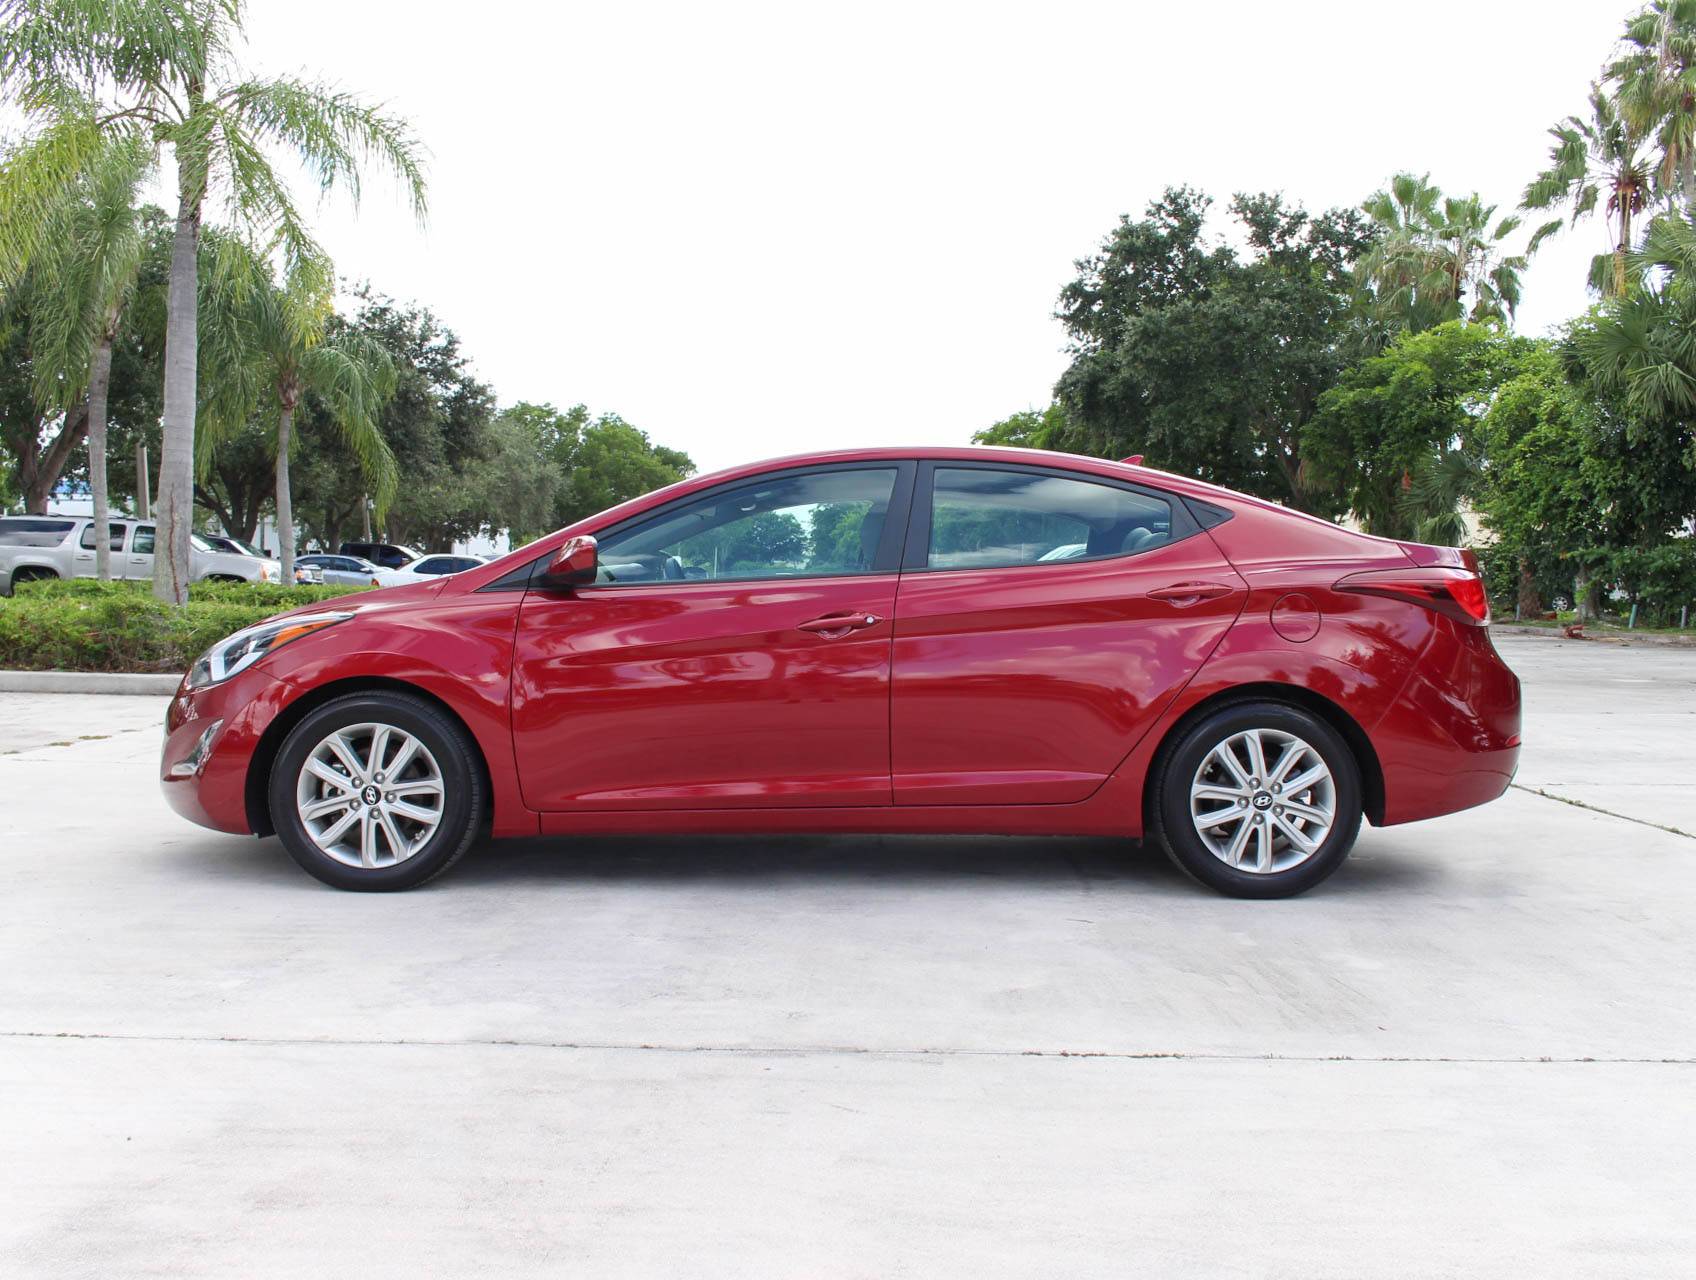 Florida Fine Cars - Used HYUNDAI ELANTRA 2015 MARGATE Se